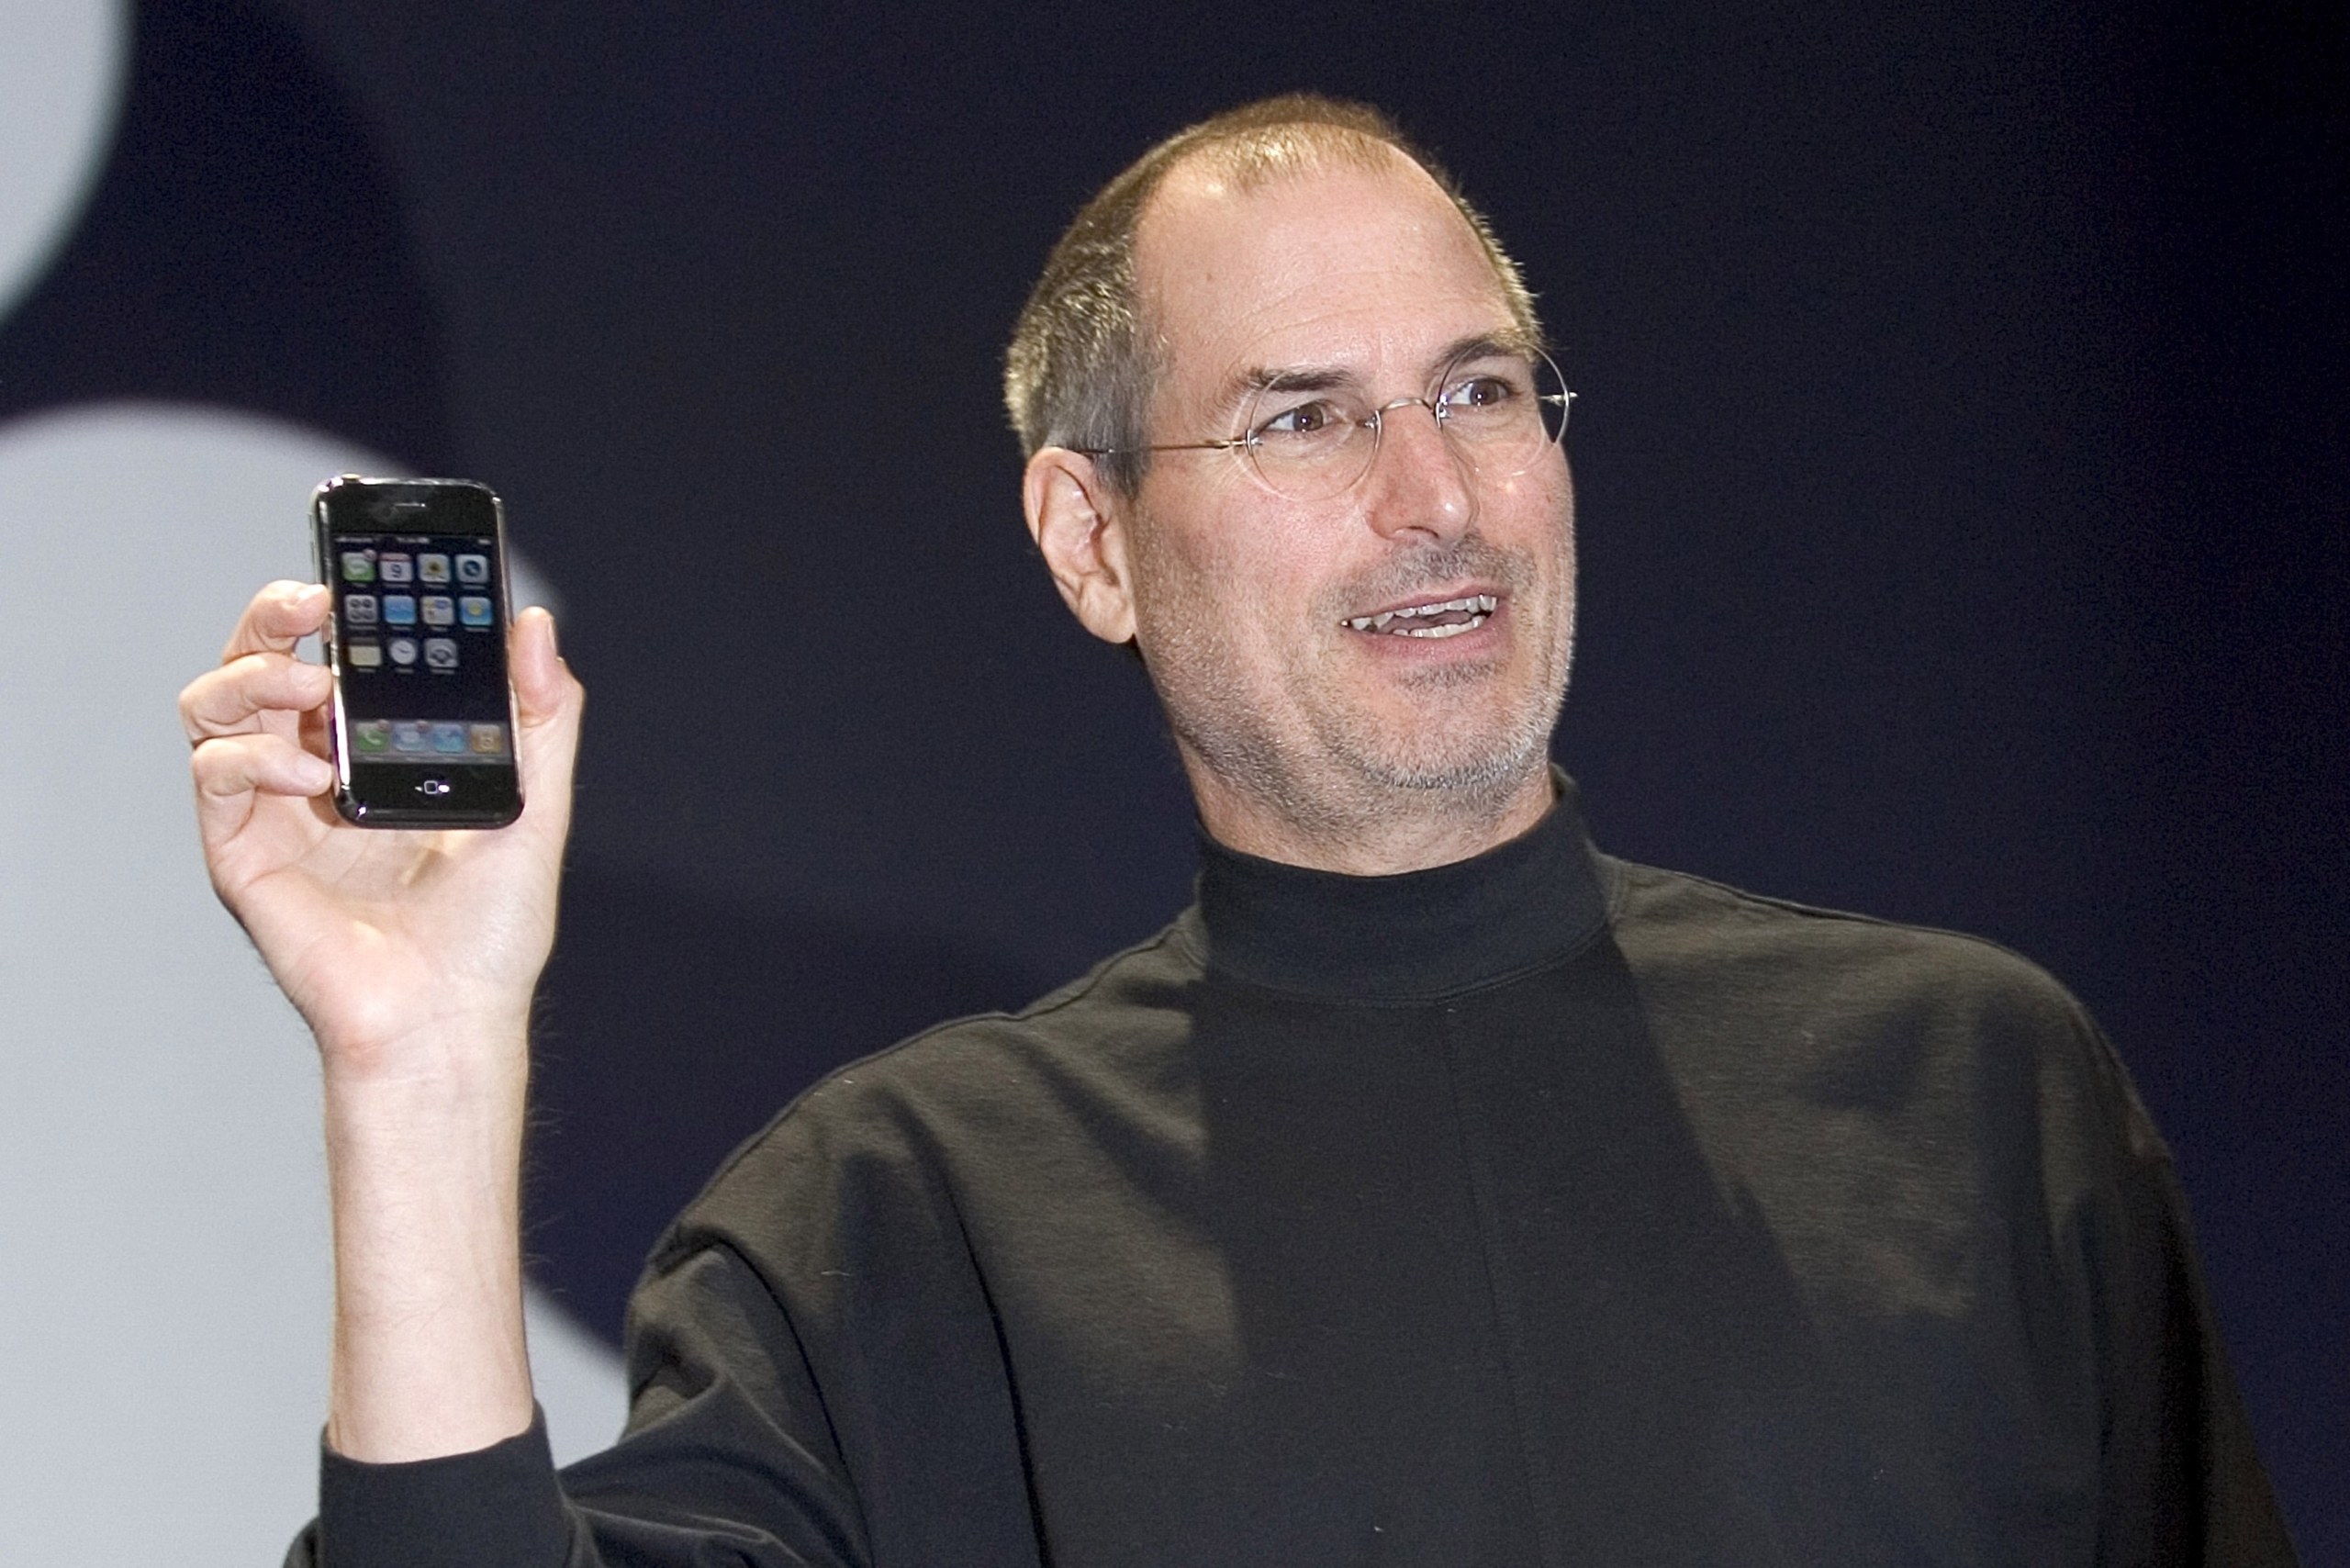 Apple podría lanzar un iPhone barato por solo 200 dólares: ¿iPhone para las  masas?